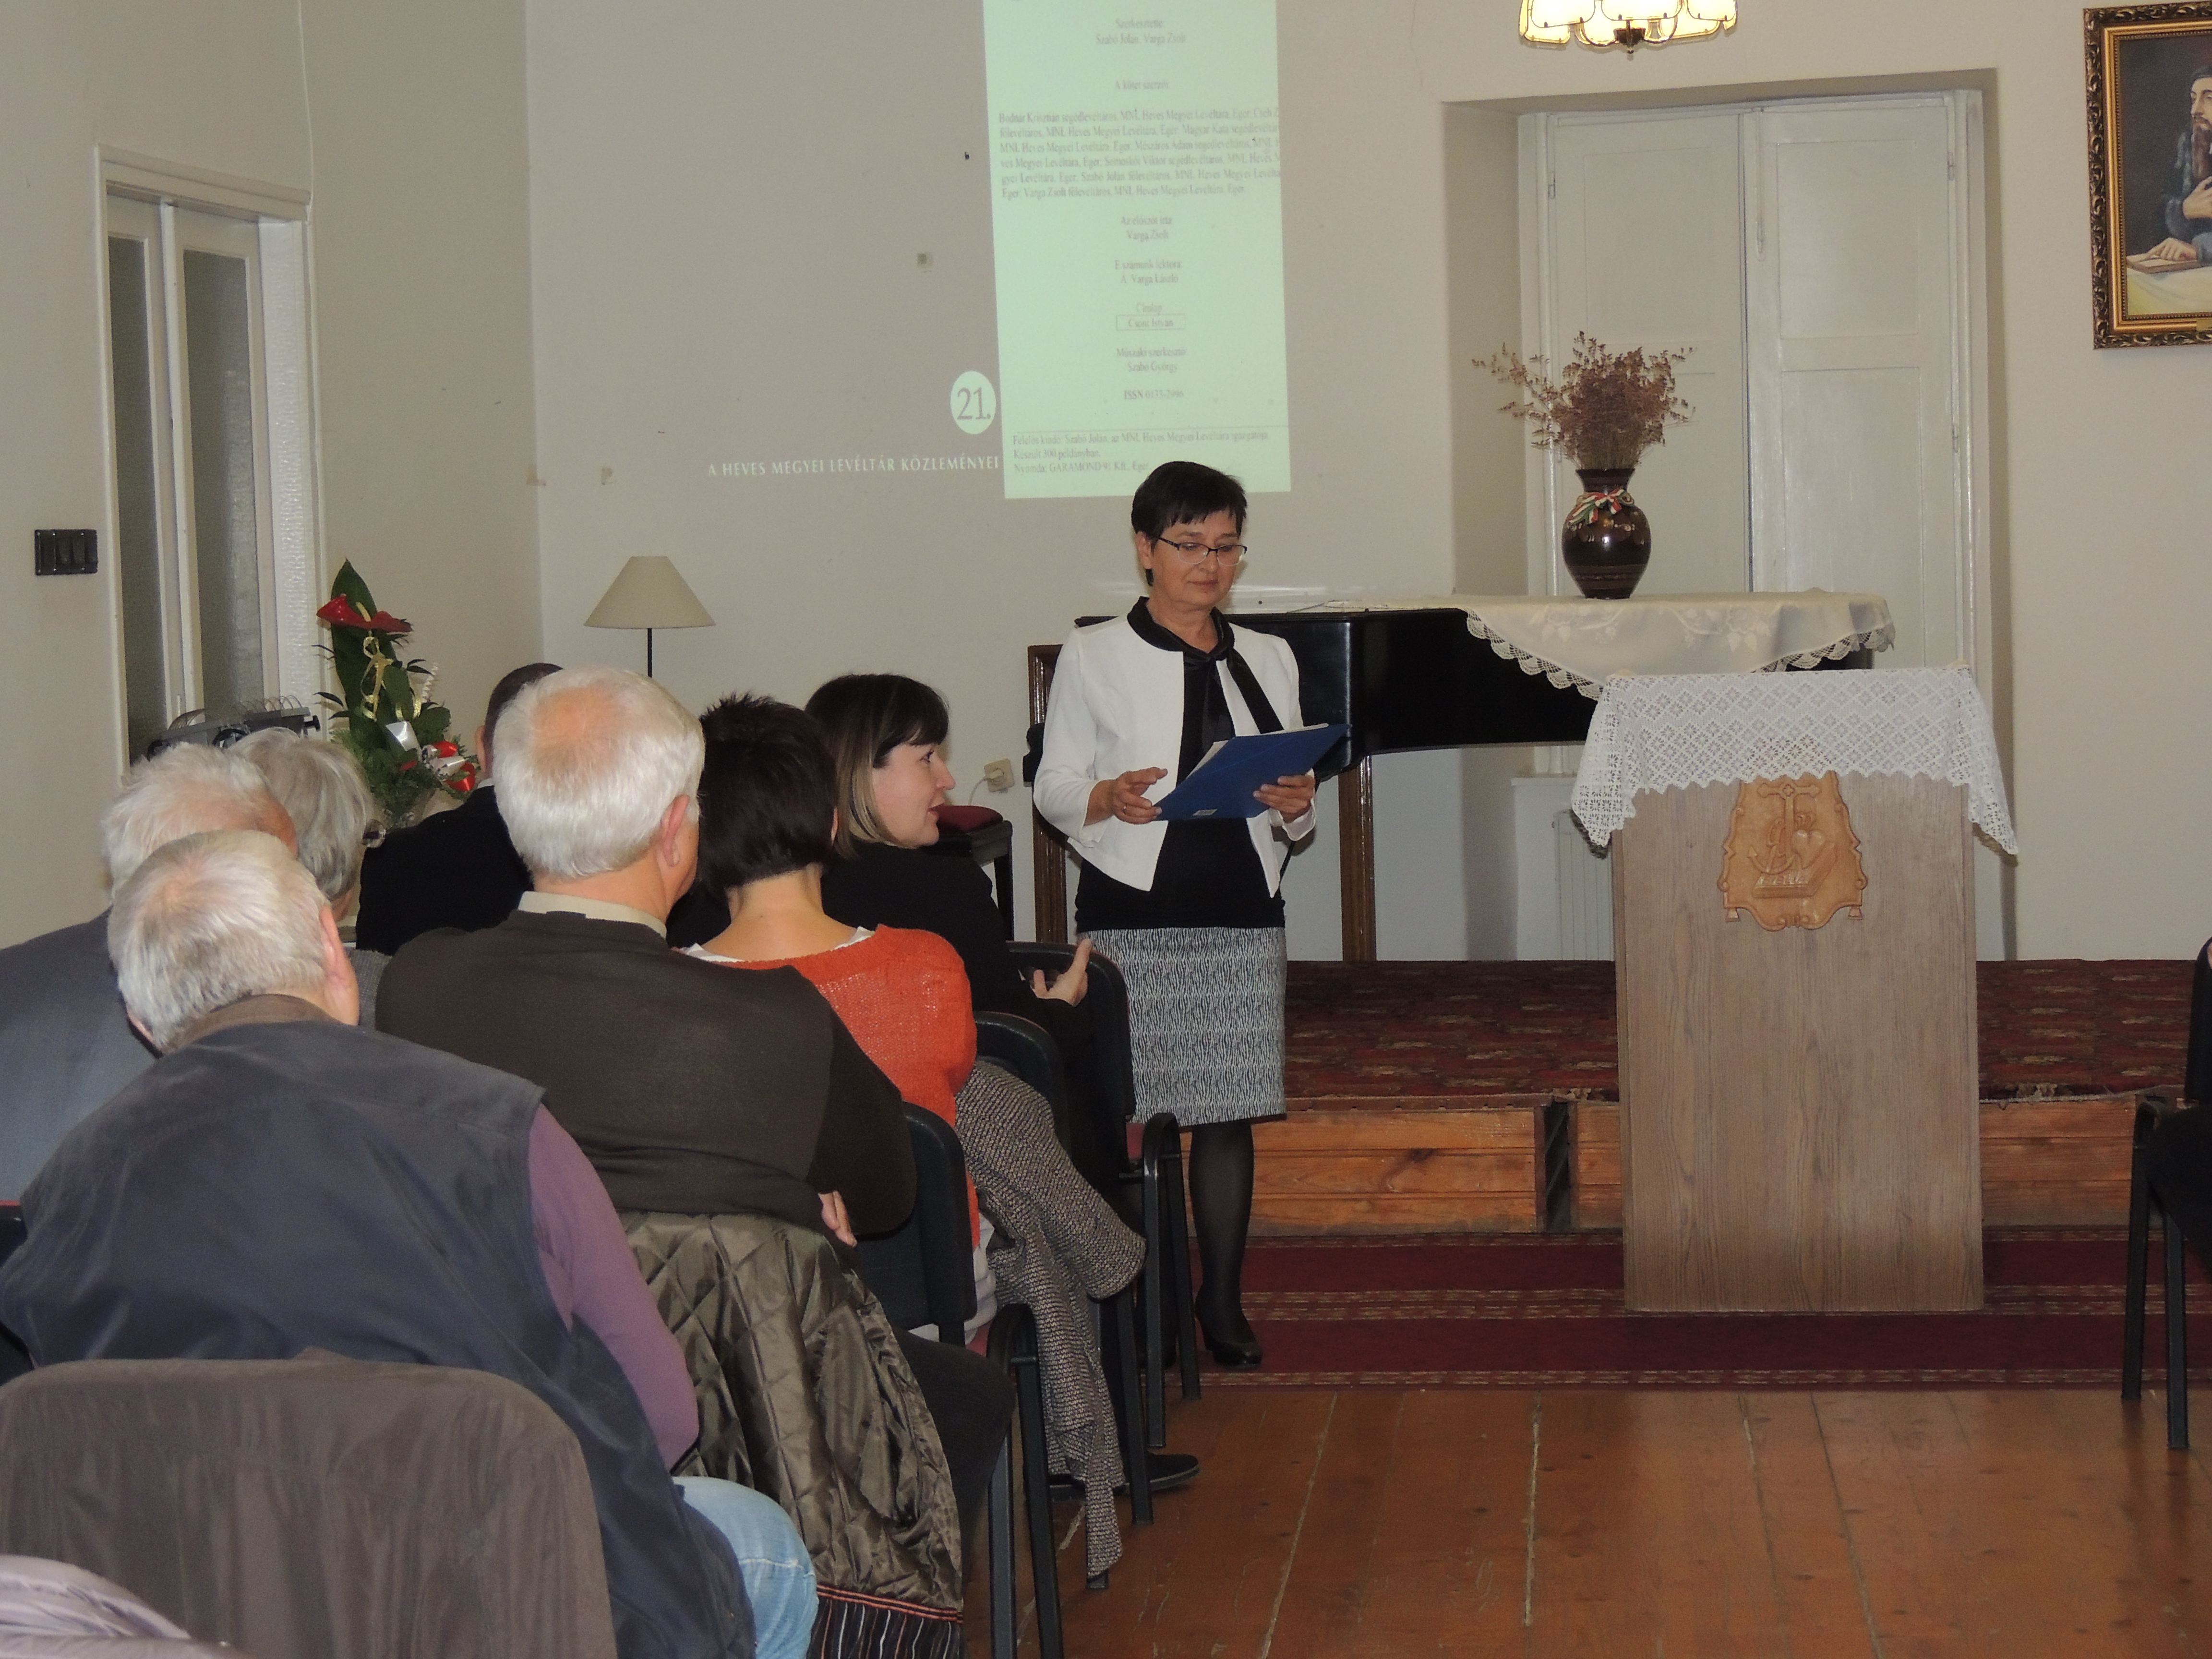 Könyvbemutató és a Reformáció MNL projekt eredményeinek ismertetése a Kálvin Házban